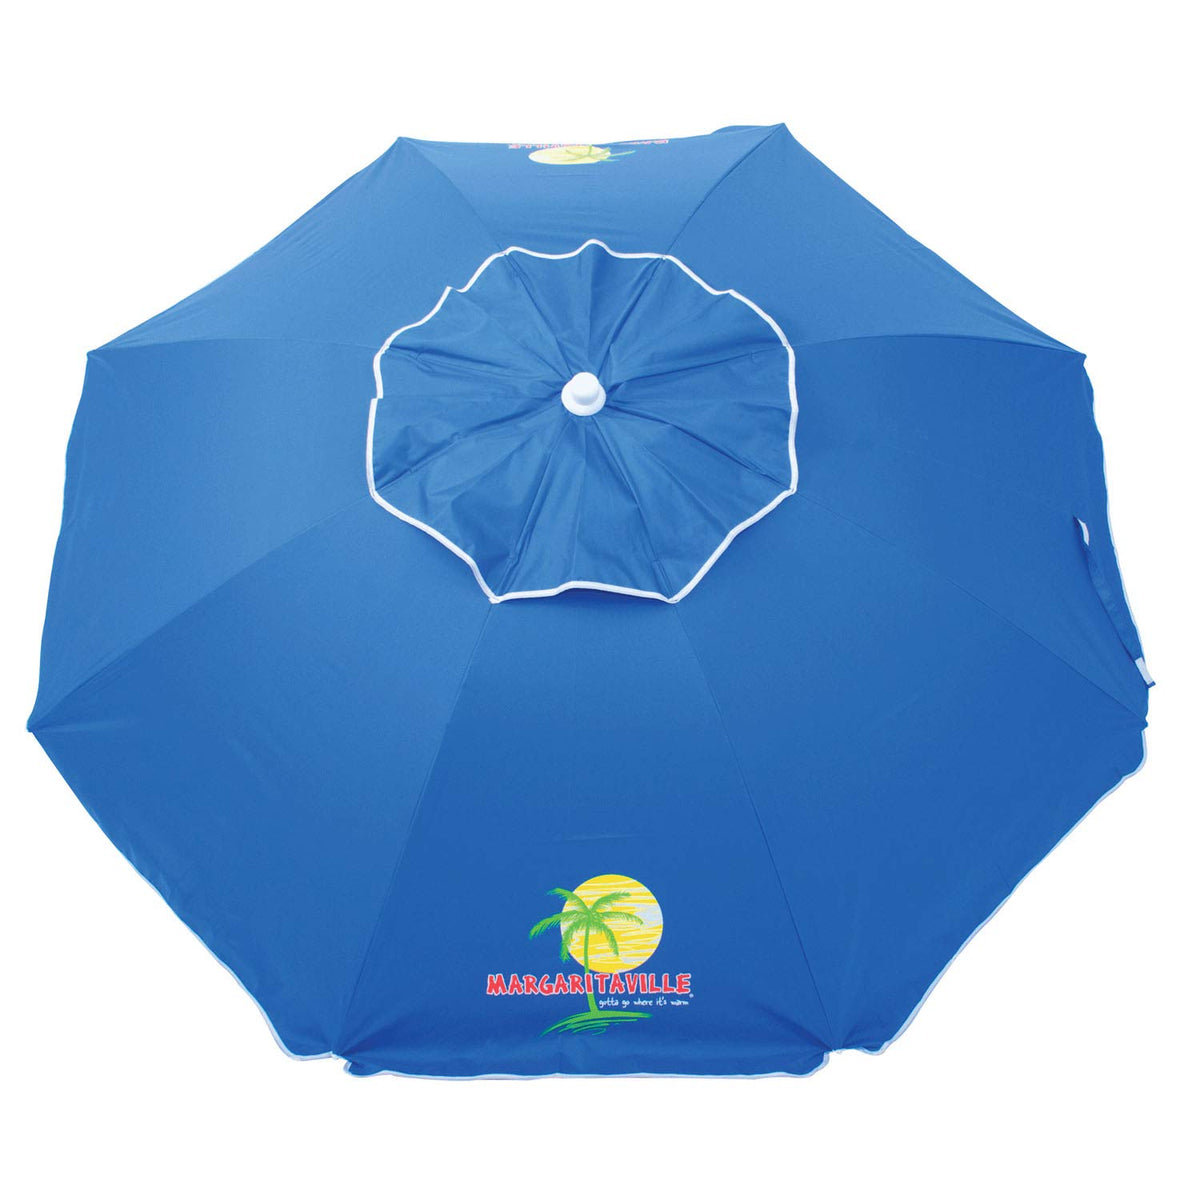 Margaritaville WUB76MV-179-1 6.5 ft UPF 50 Plus Sun Protection Tilt Umbrella- Anchor